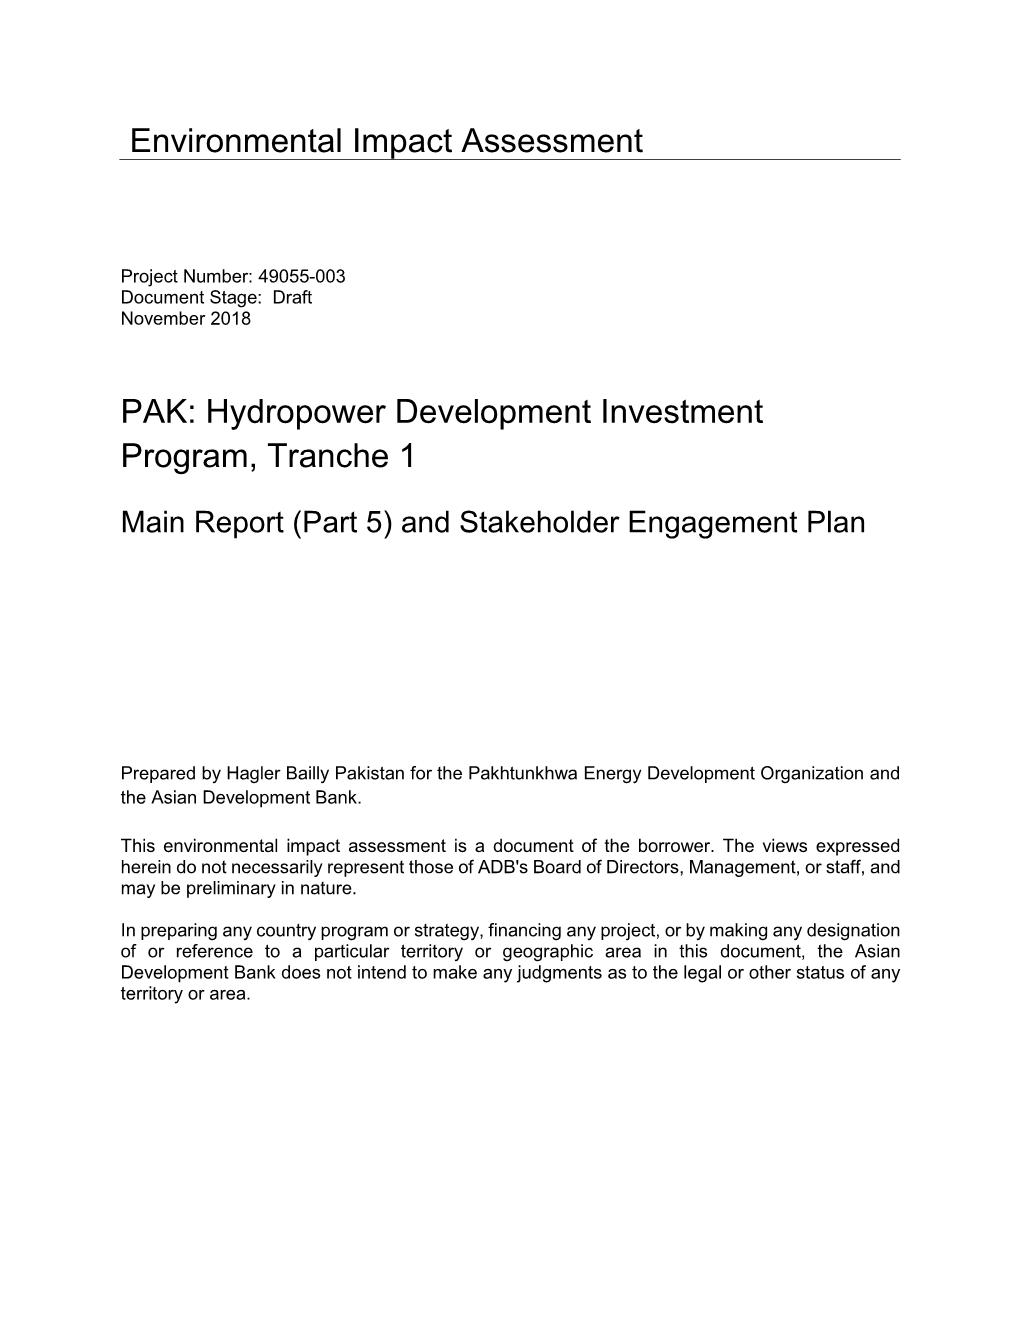 49055-003: Hydropower Development Investment Program